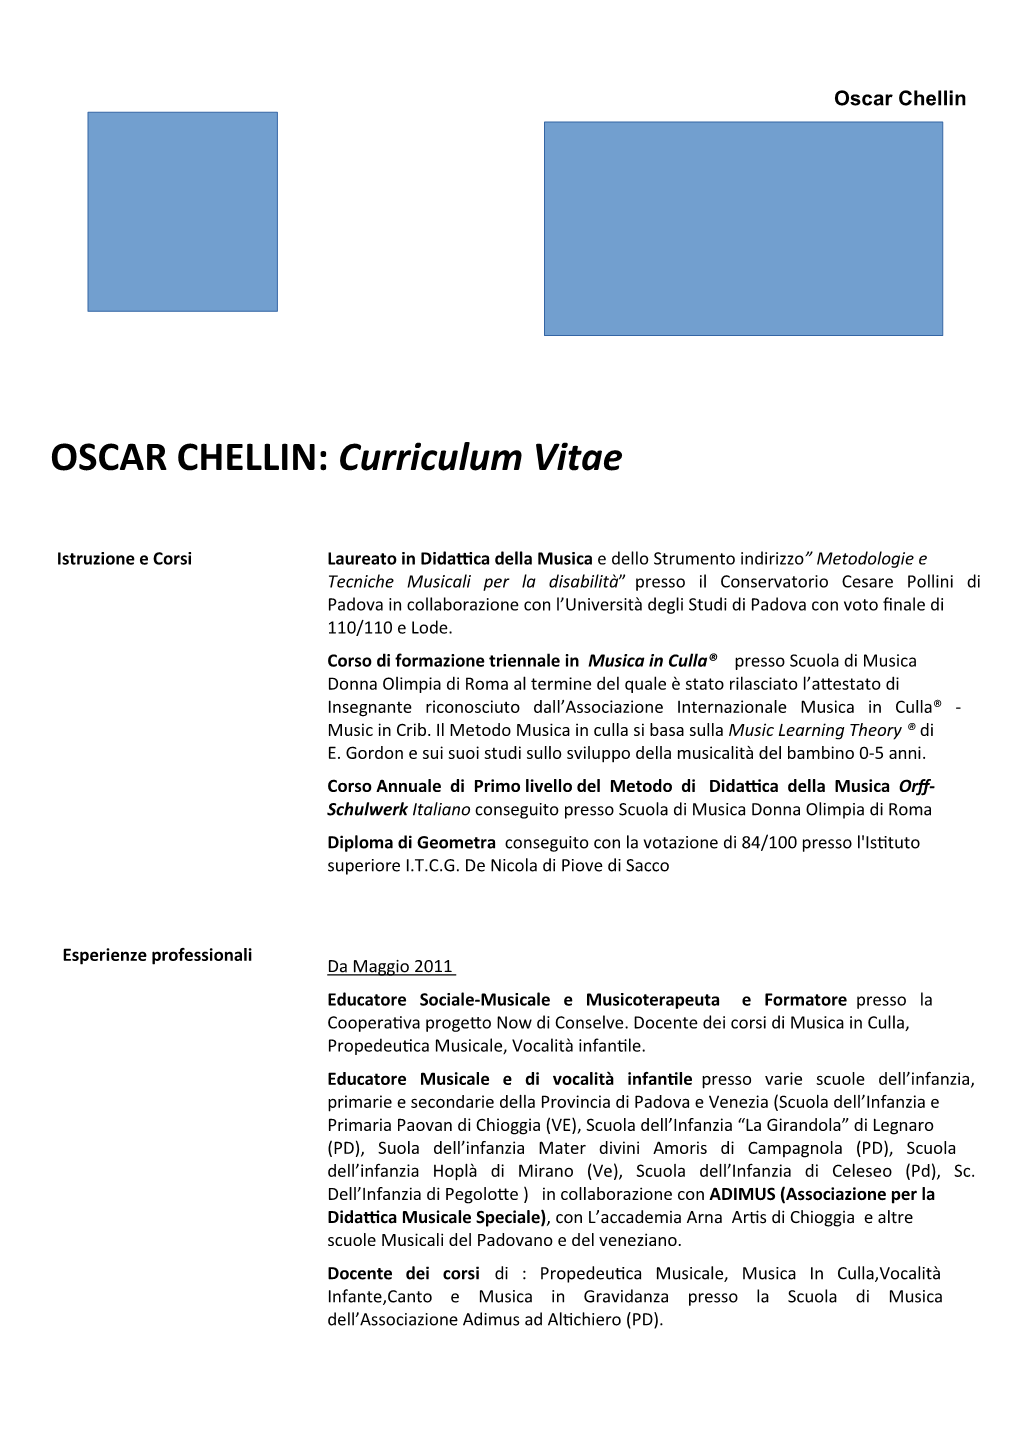 OSCAR CHELLIN: Curriculum Vitae